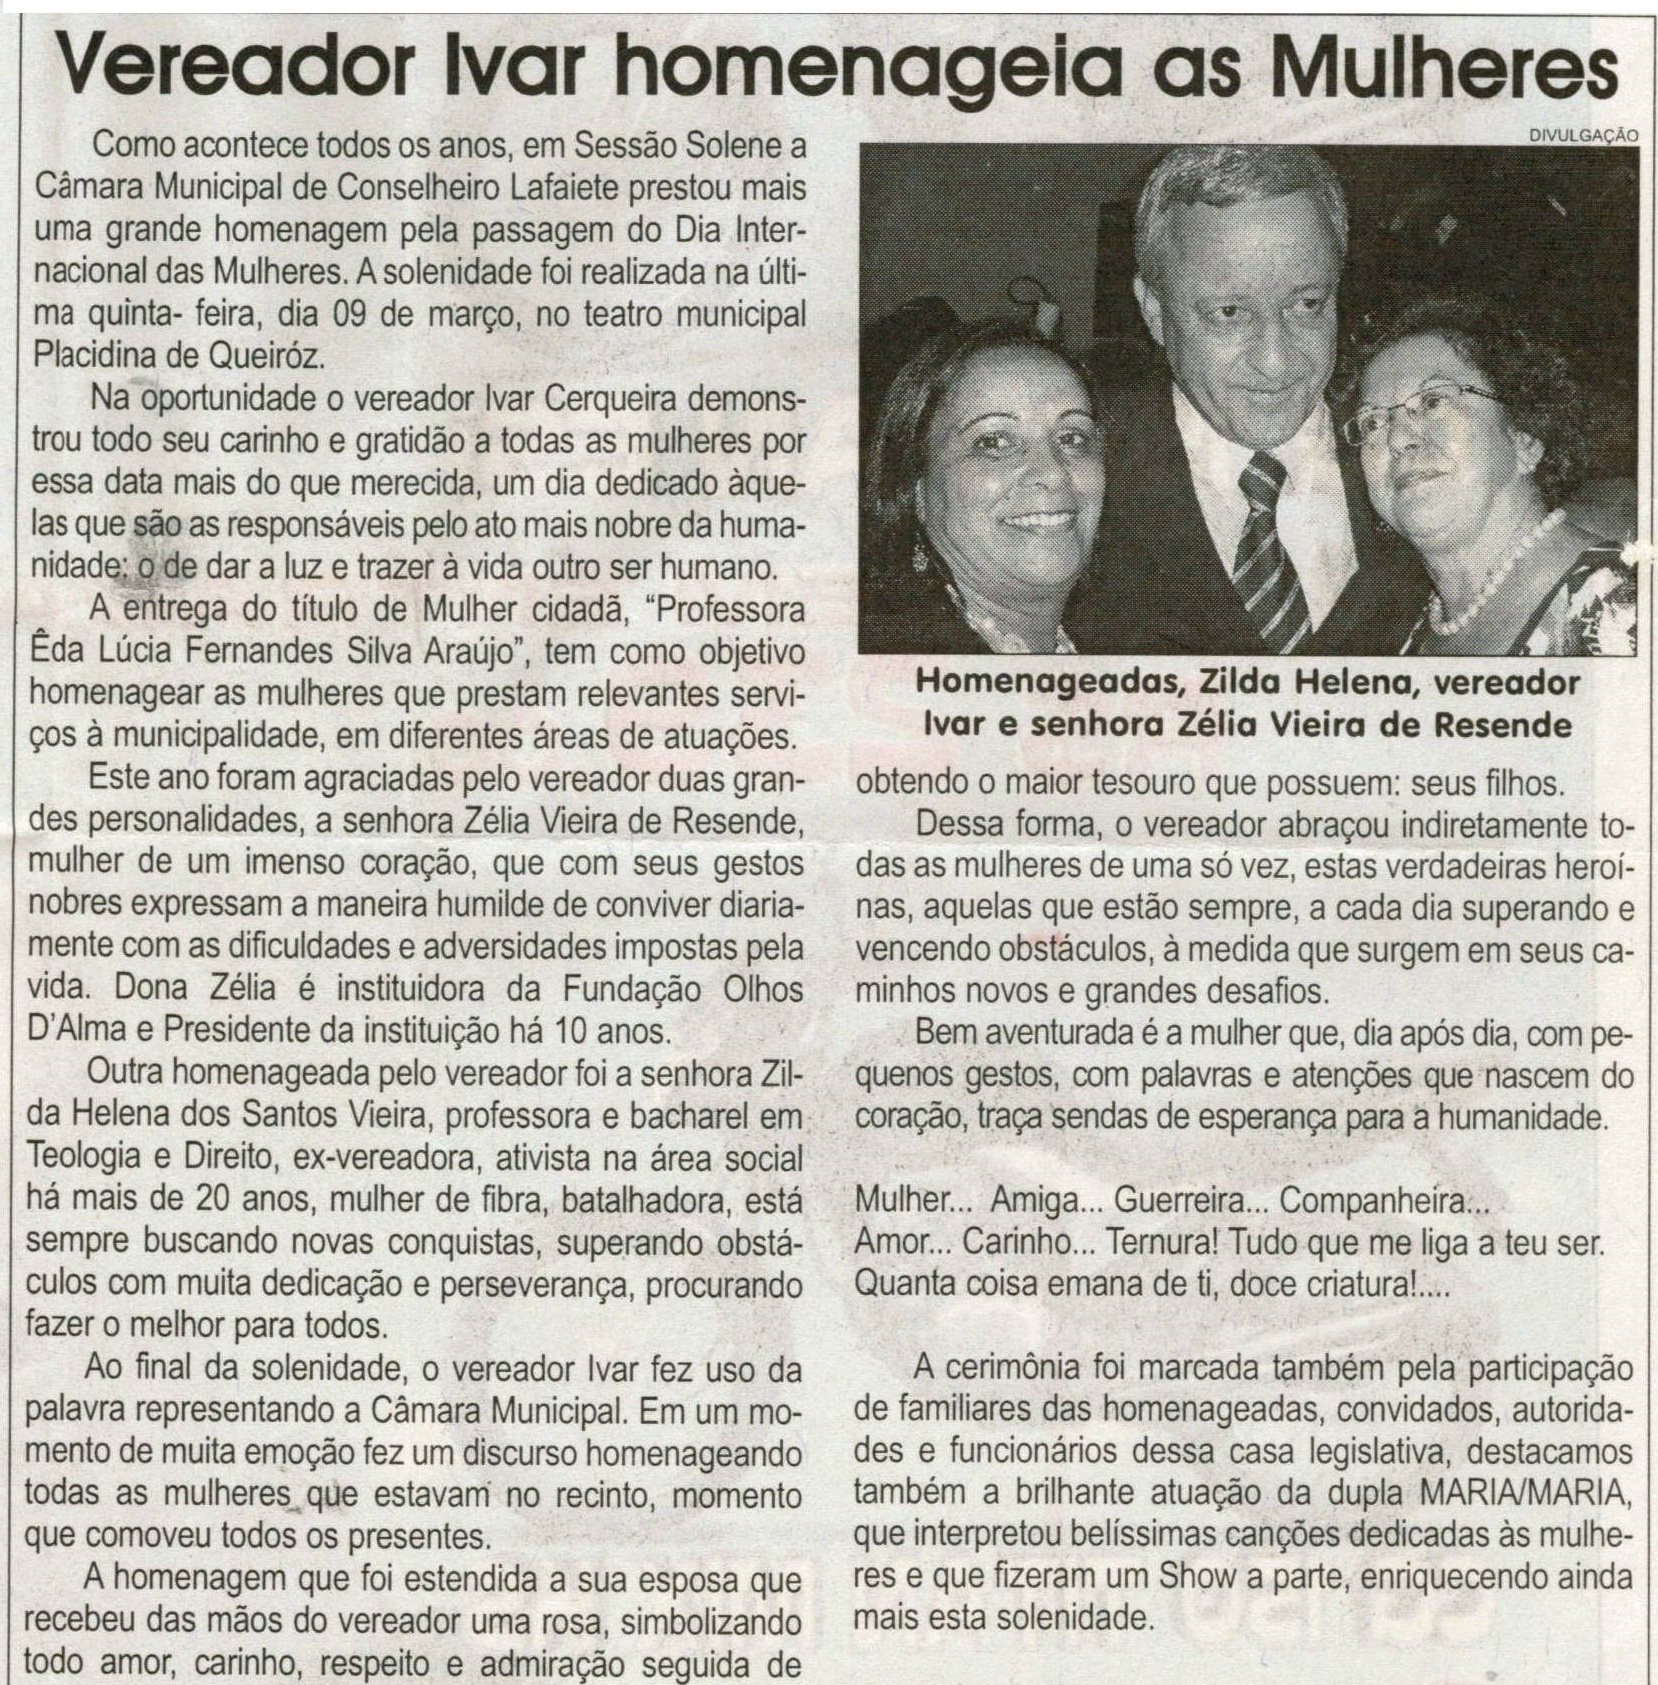 Vereador Ivar homenageia as Mulheres. Jornal Correio da Cidade, Conselheiro Lafaiete,  27 mar. 2010, p. 04.